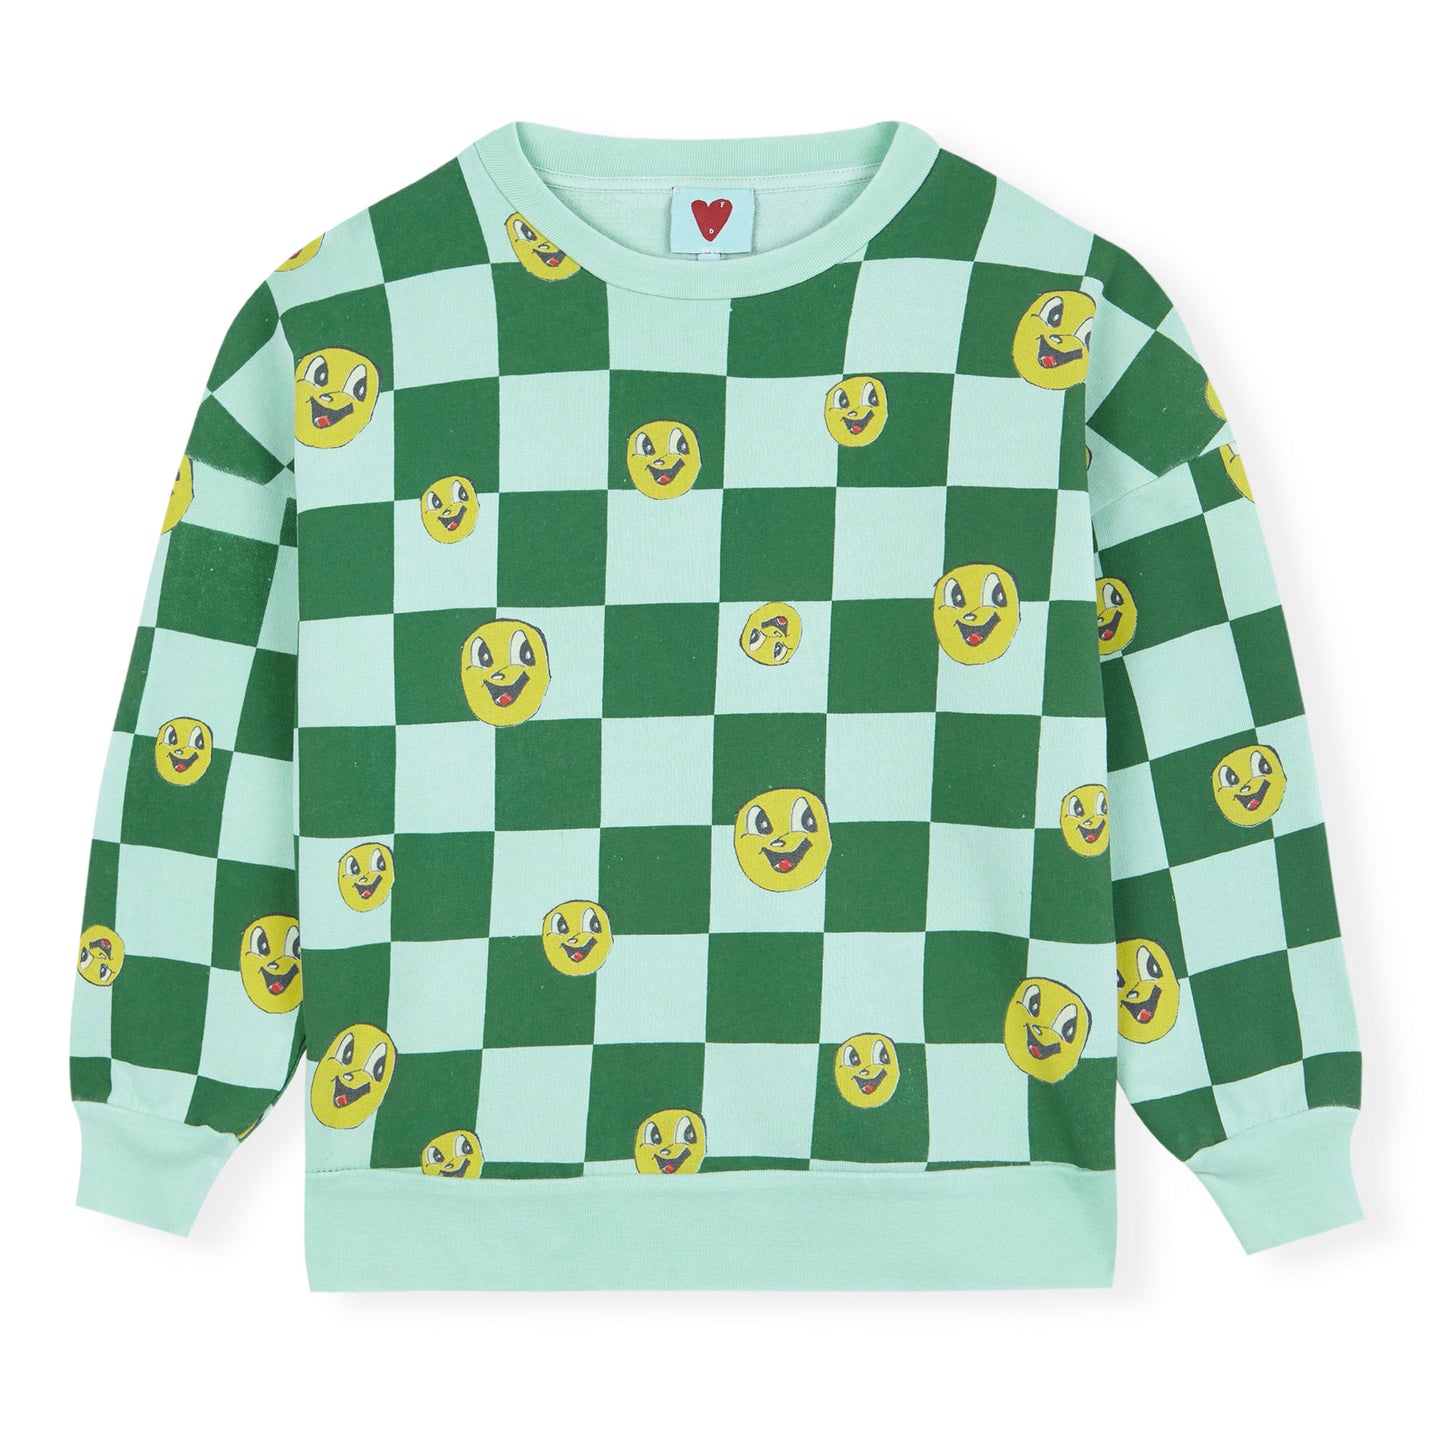 Chess Sweatshirt